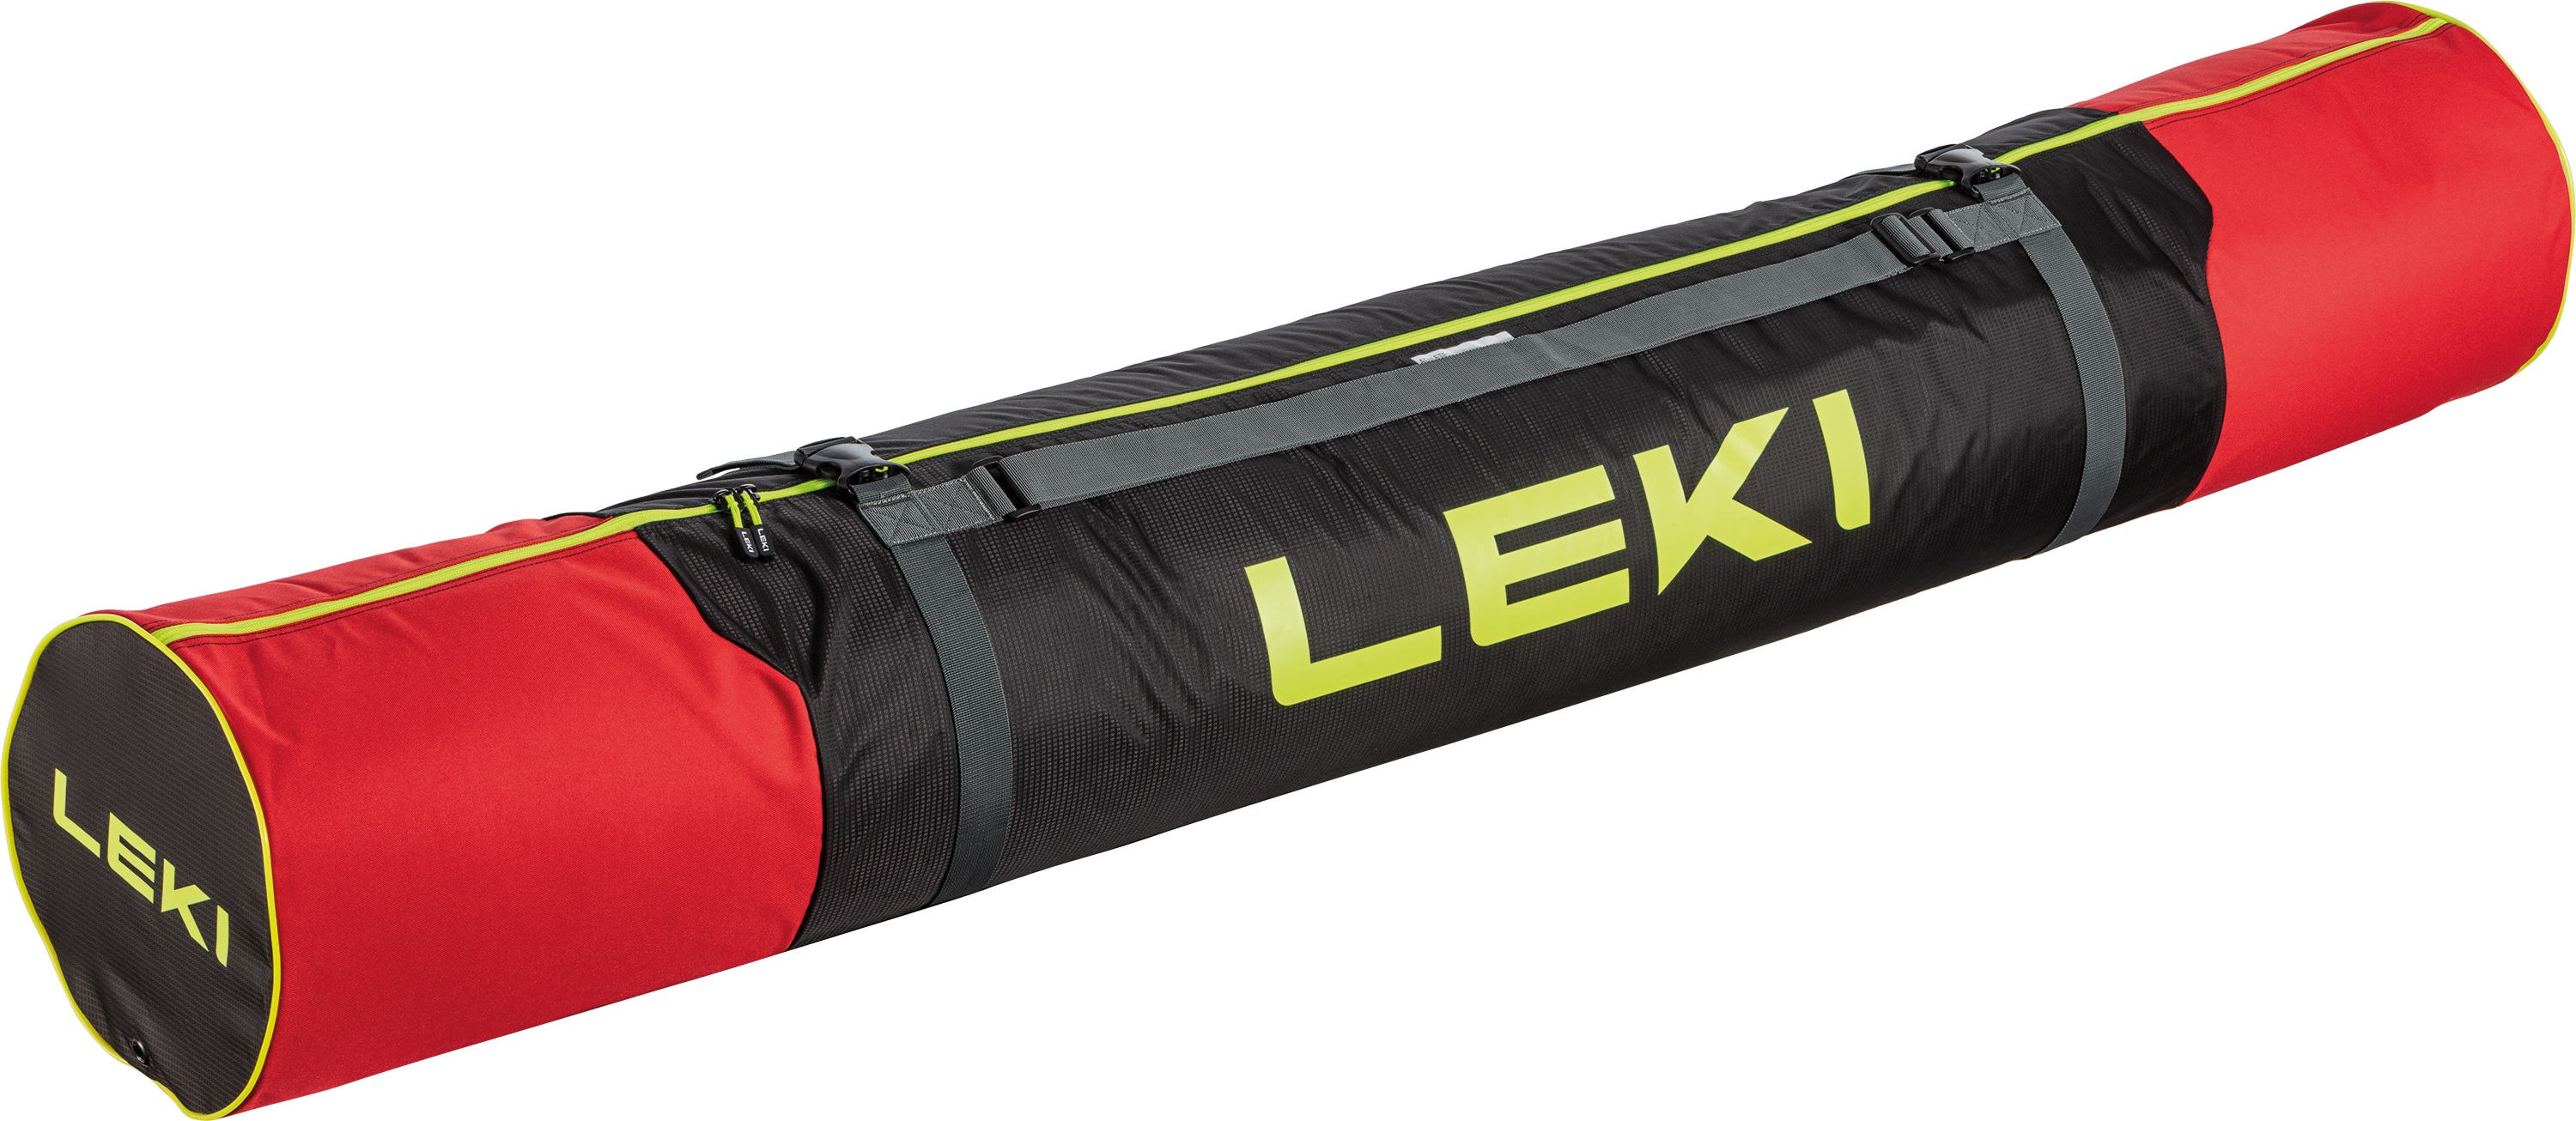 LEKI ALPINE Ski Bag Skibag Skitasche Skisack bis 185 cm für 2 PAAR Ski